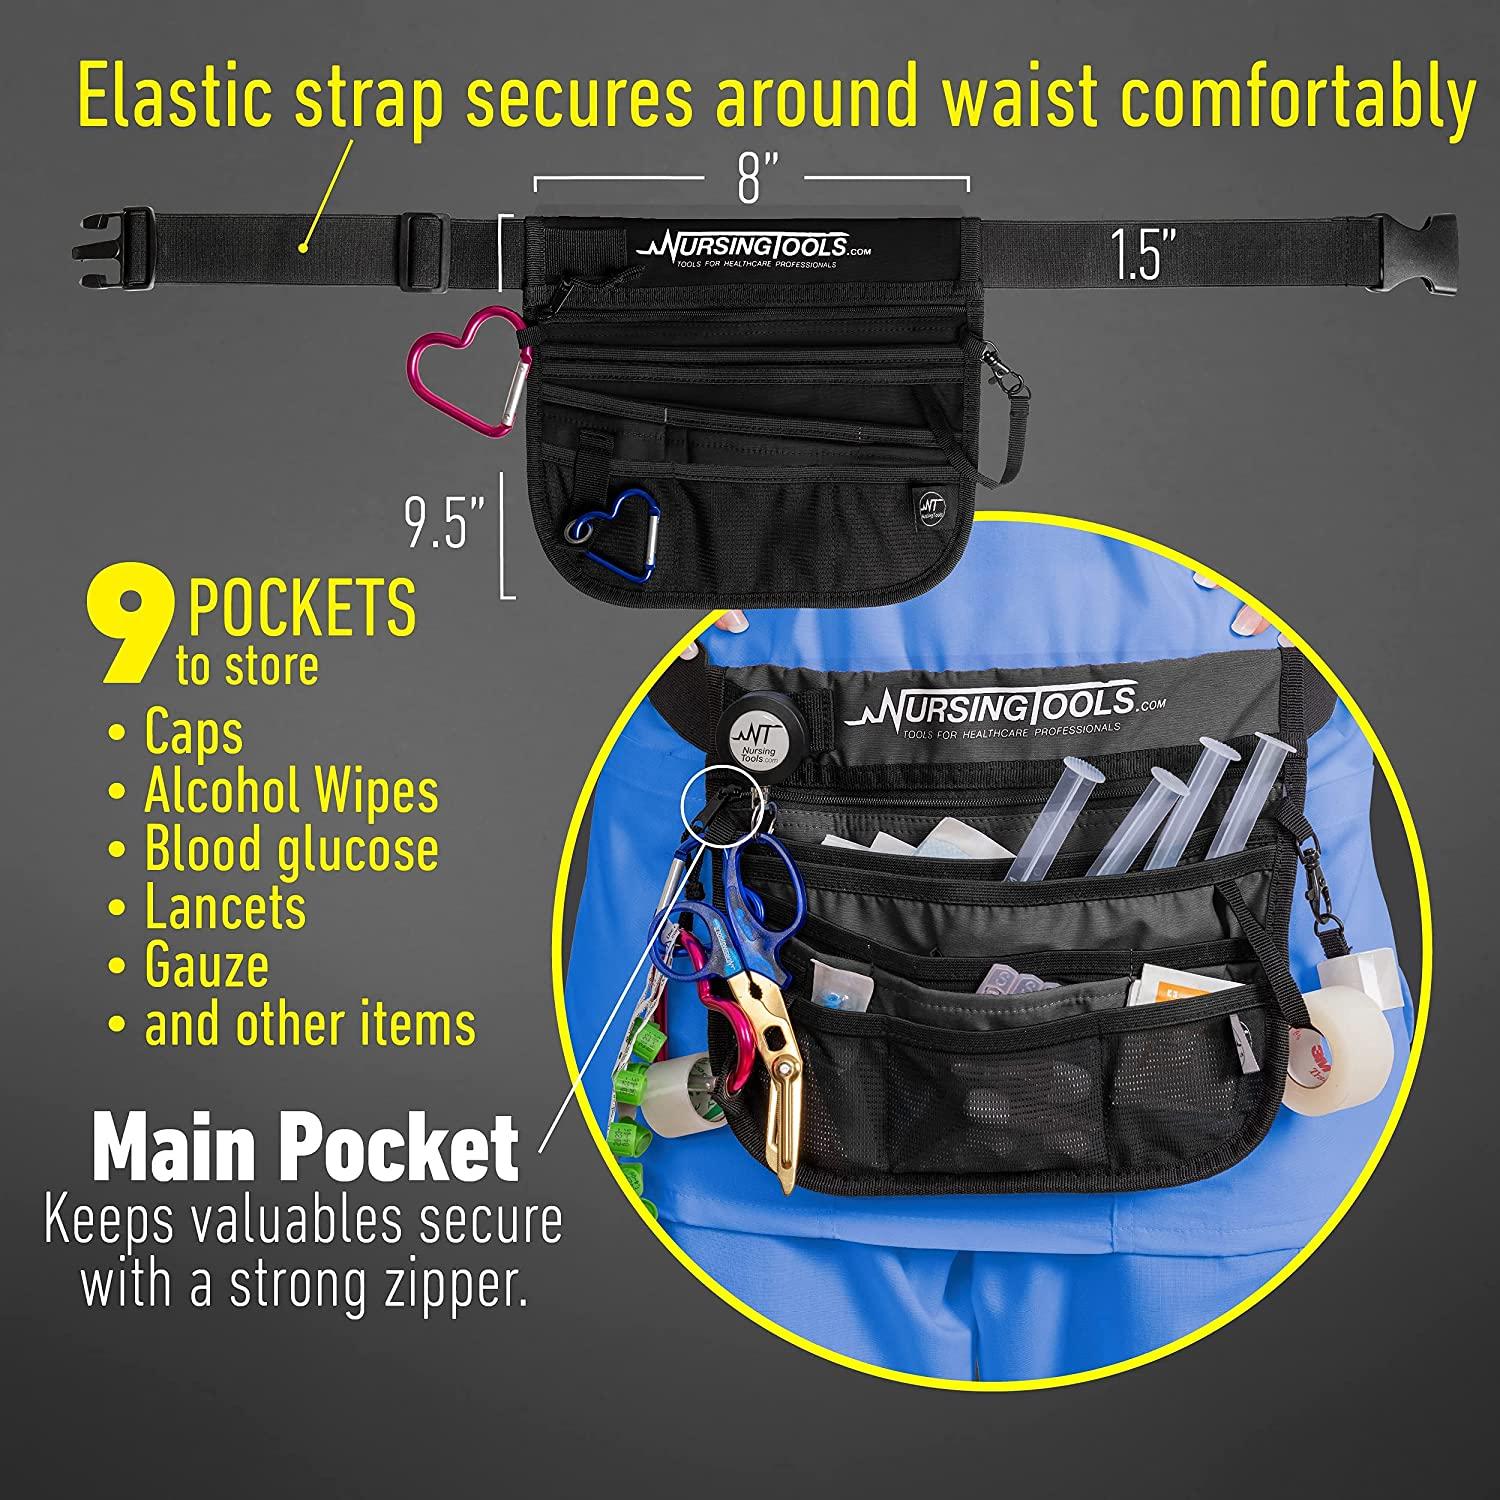 Bumbag Waist Bag Organizer / Bumbag Insert / Handbag Storage